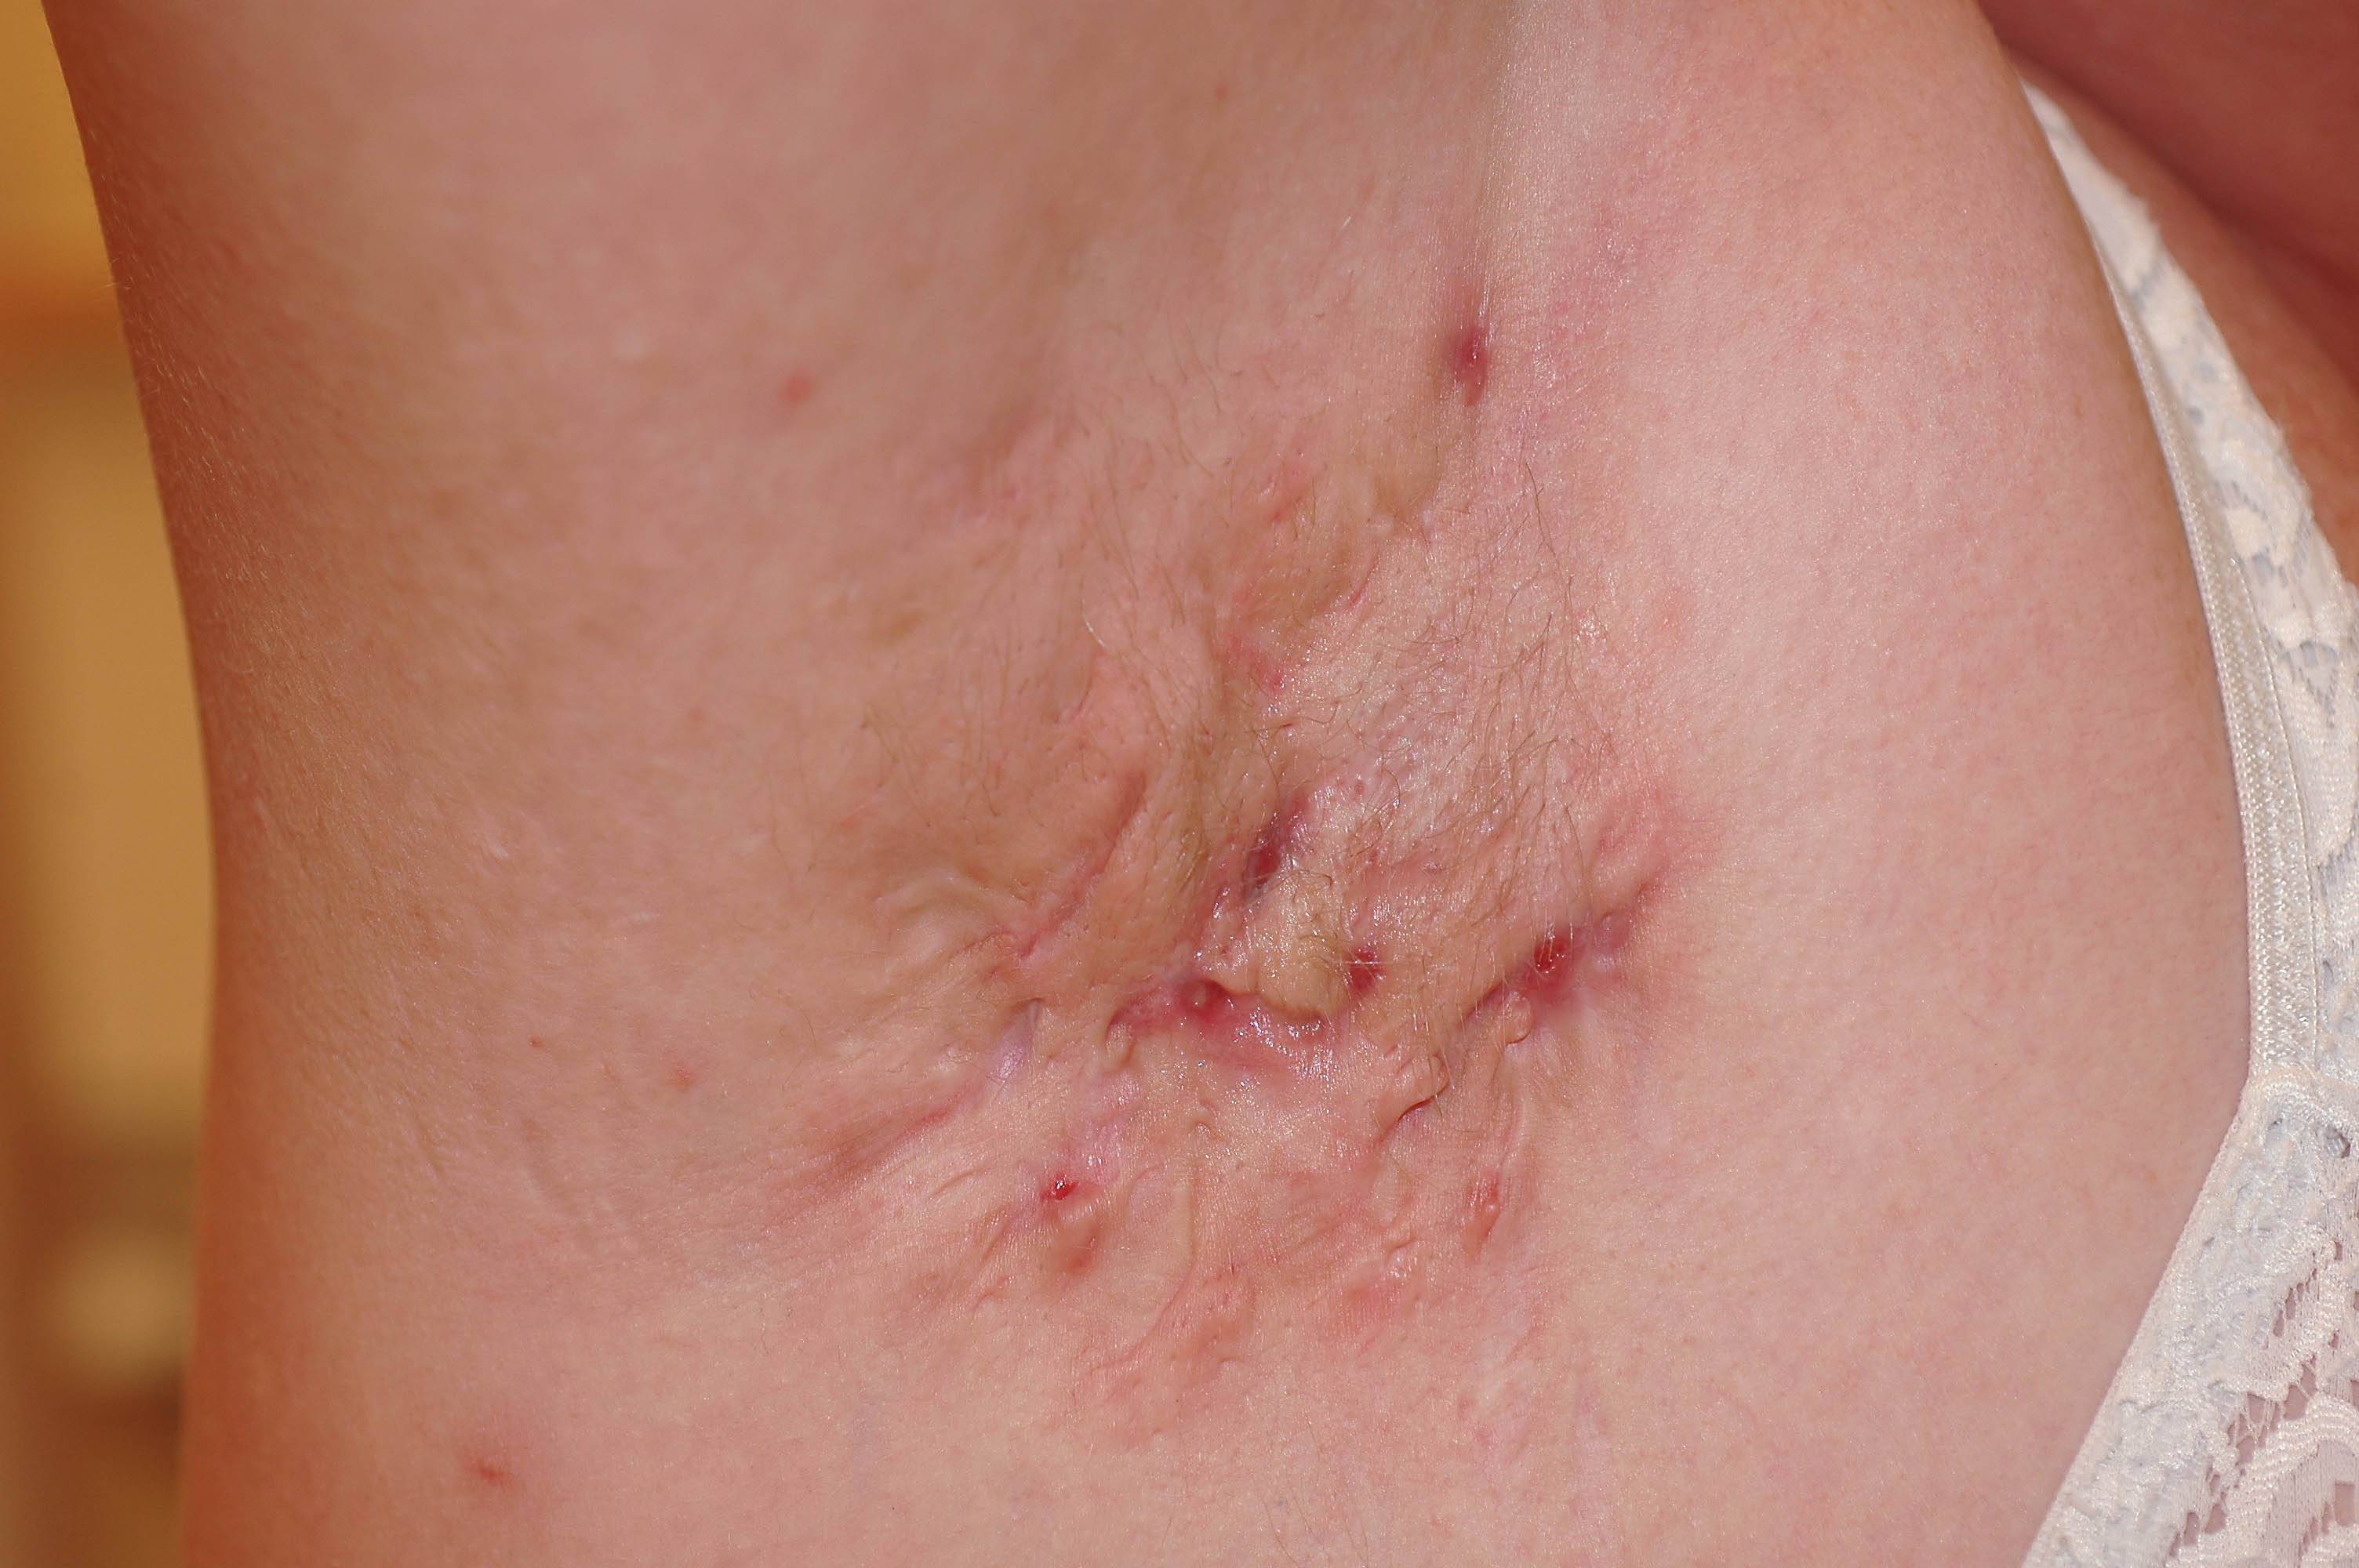 Hidradenitis suppurativa (HS) med lesioner av knutor, abscesser och fistlar i armhåla